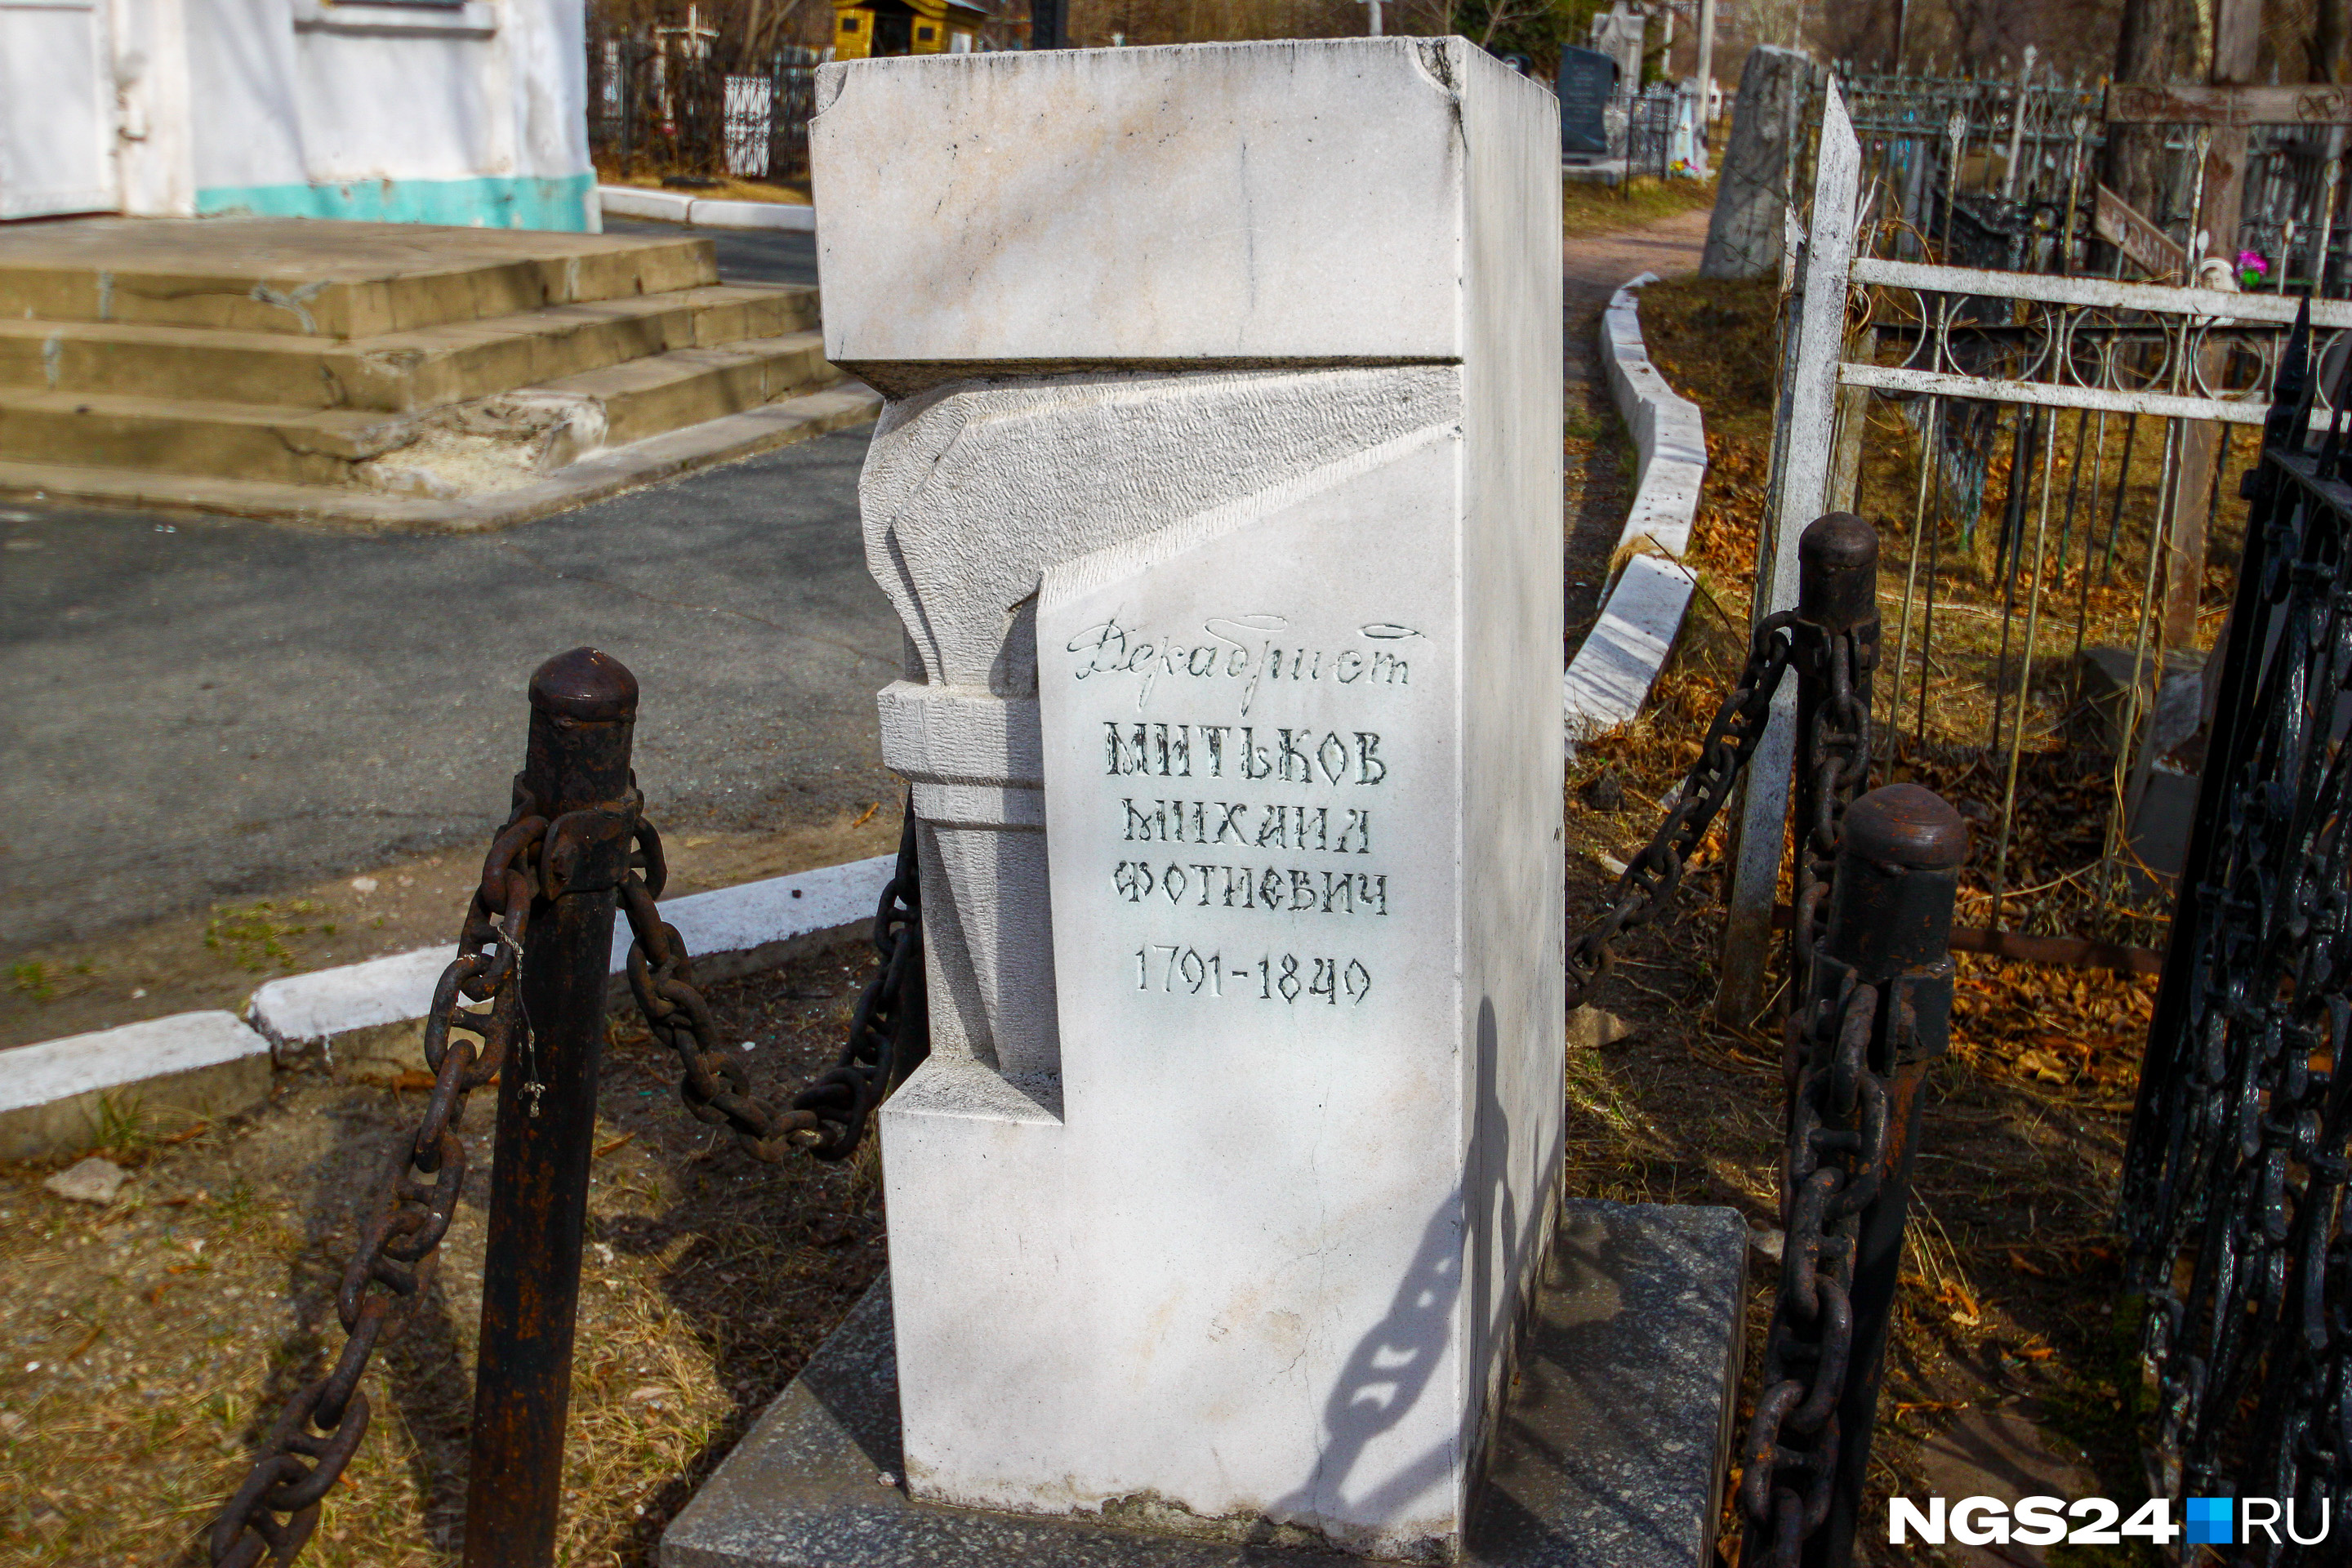 Памятник Михаилу Митькову поставлен в 1986 году на месте предполагаемого захоронения декабриста